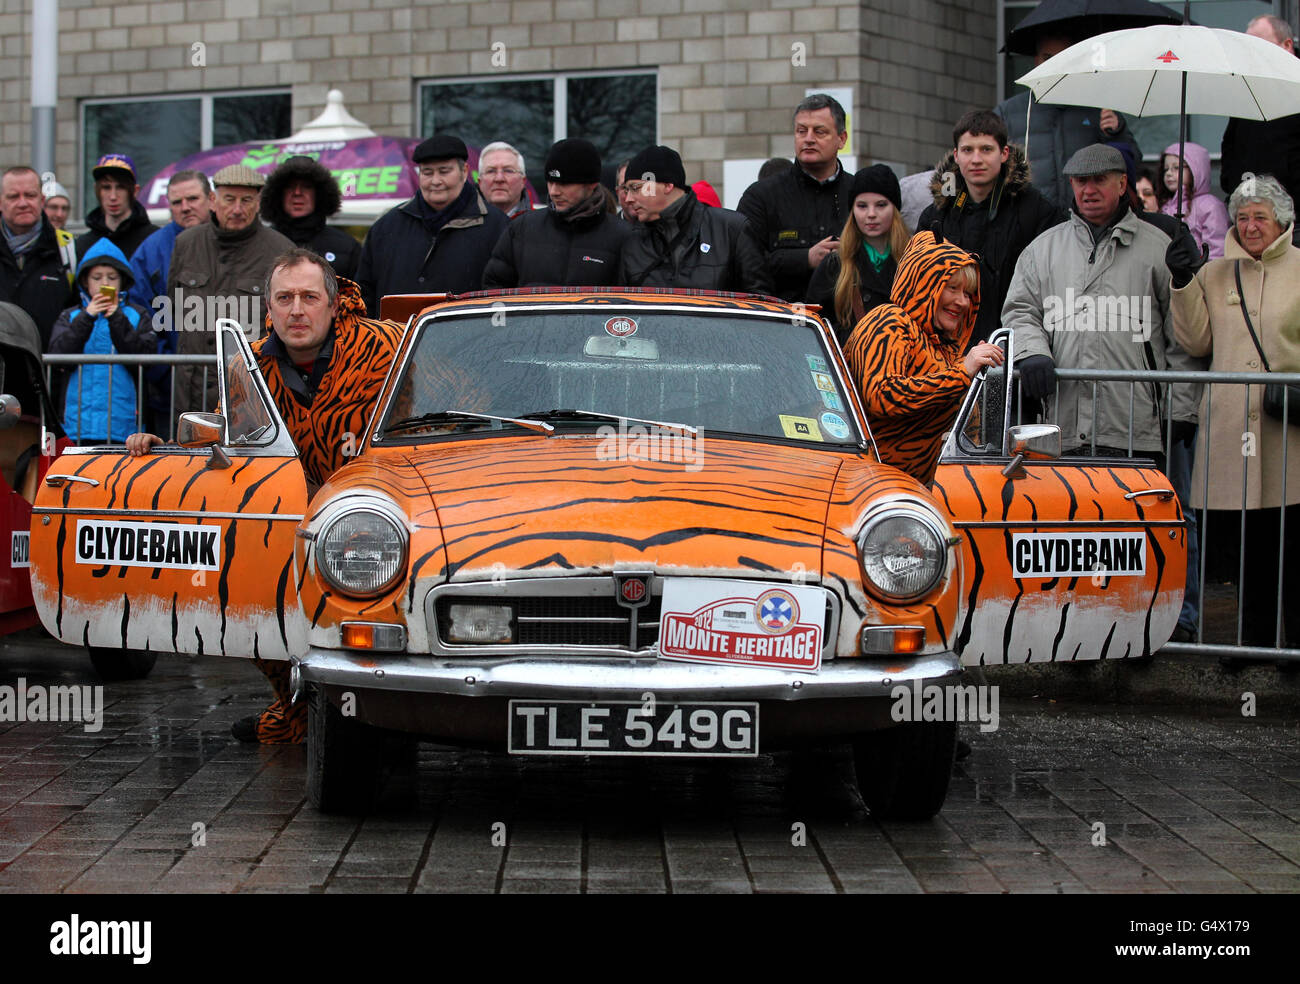 Les concurrents de Monte Carlo Rally Andy et Allie Hamilton avec leur MG au Monte Carlo Rally 2012 à partir de Clydebank, en Écosse, avec environ 100 véhicules classiques participant à la course de 2190 miles. Banque D'Images